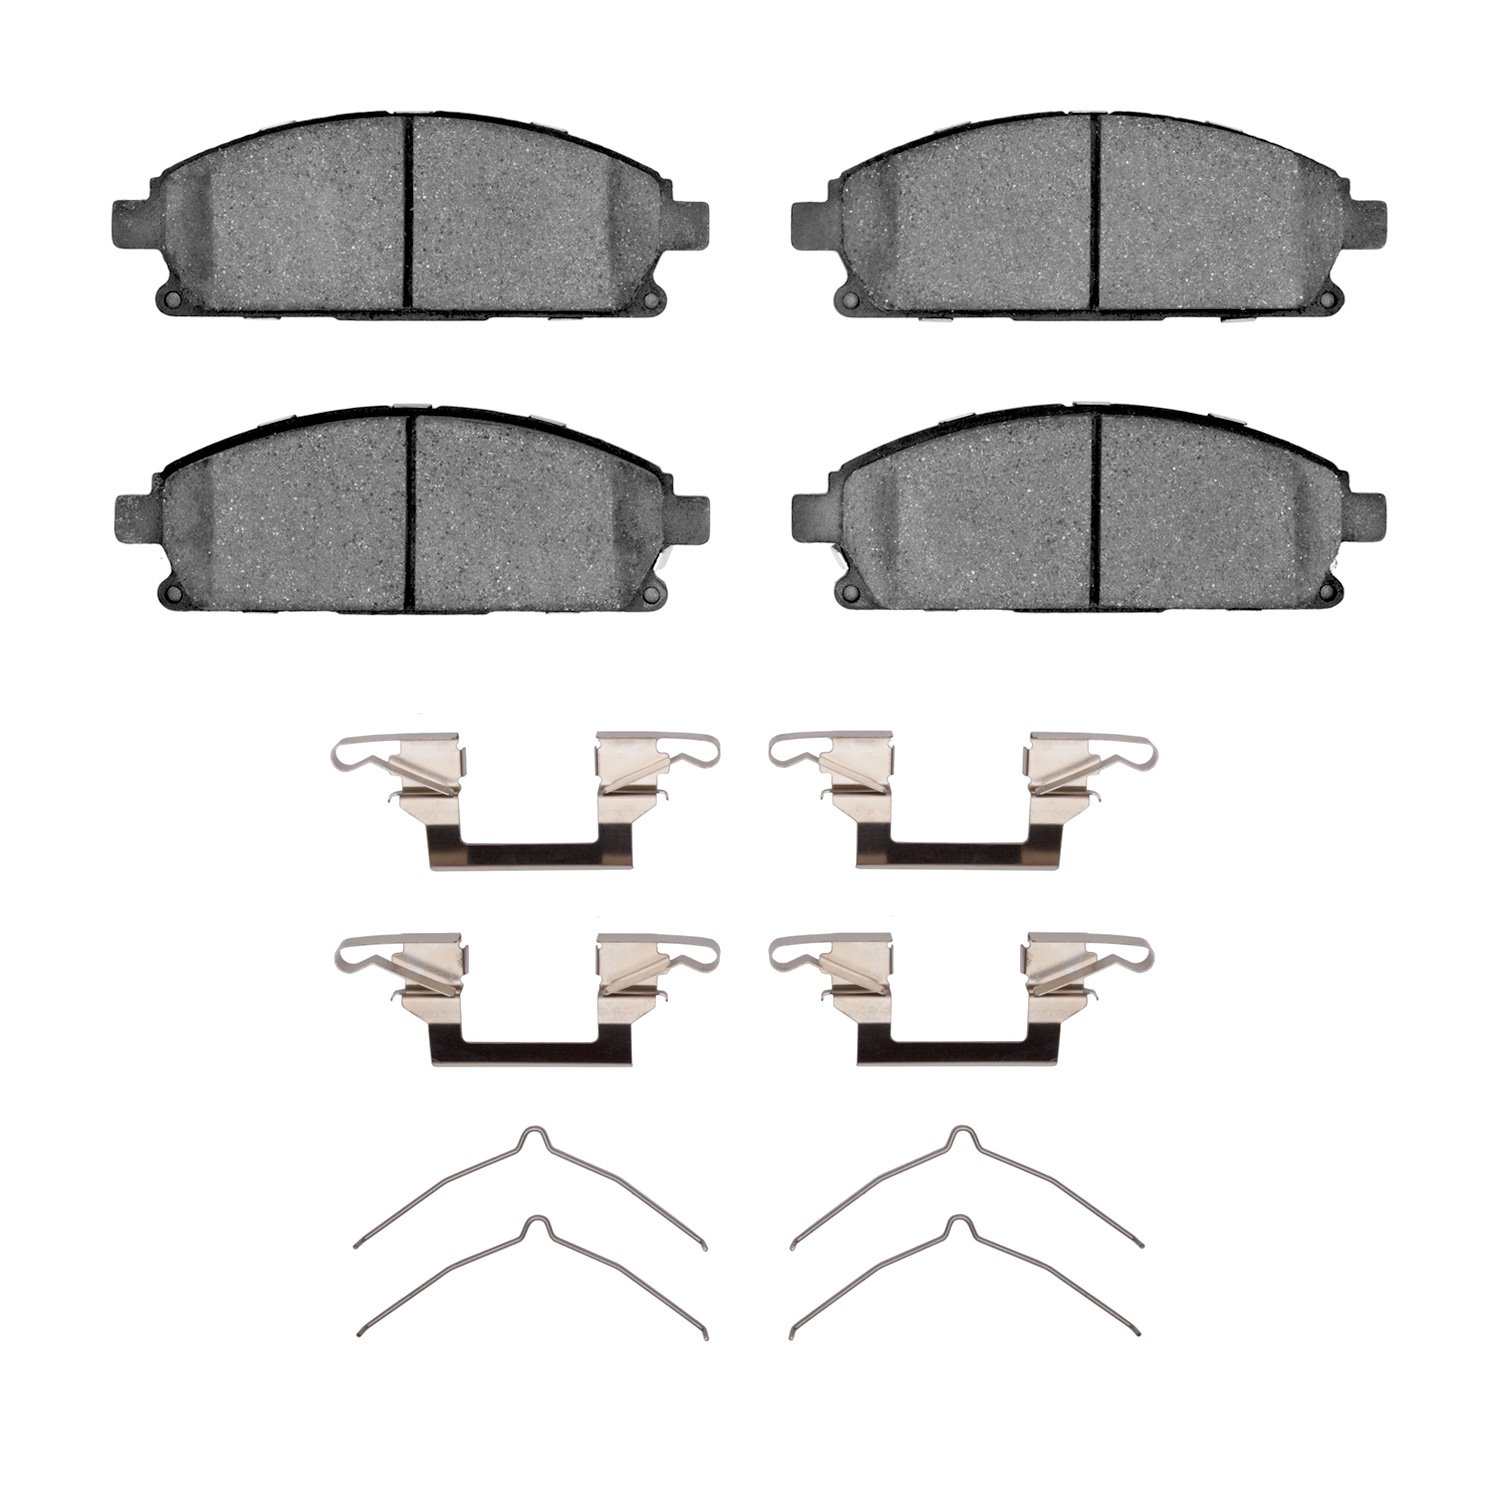 1311-0691-02 3000-Series Semi-Metallic Brake Pads & Hardware Kit, 1996-2004 Infiniti/Nissan, Position: Front